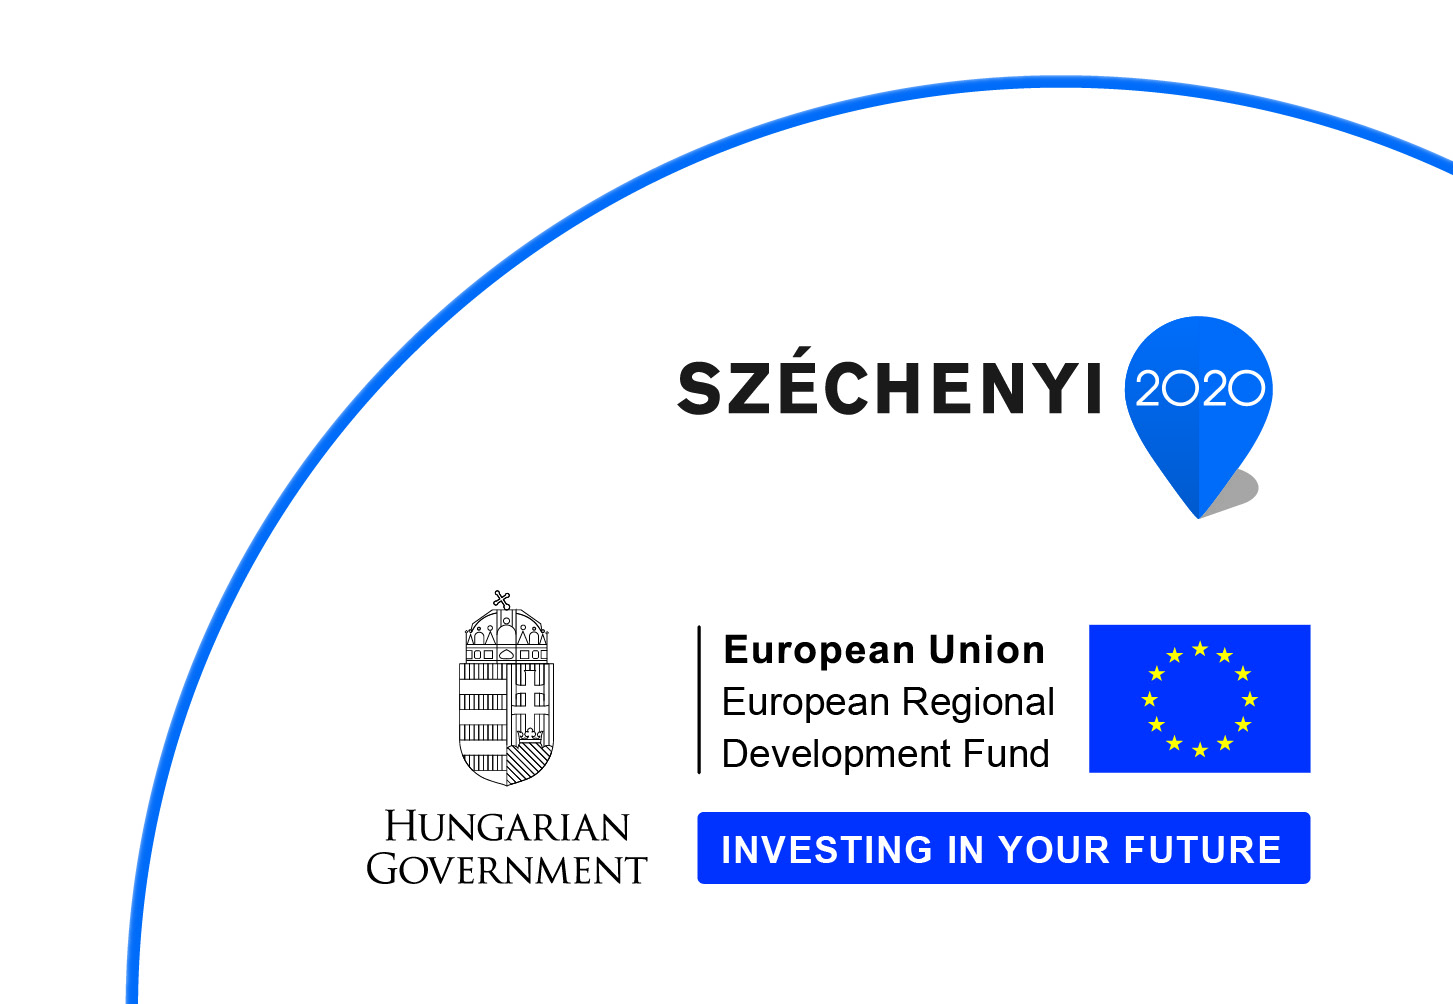 SZECHENYI 2020 Infoblock